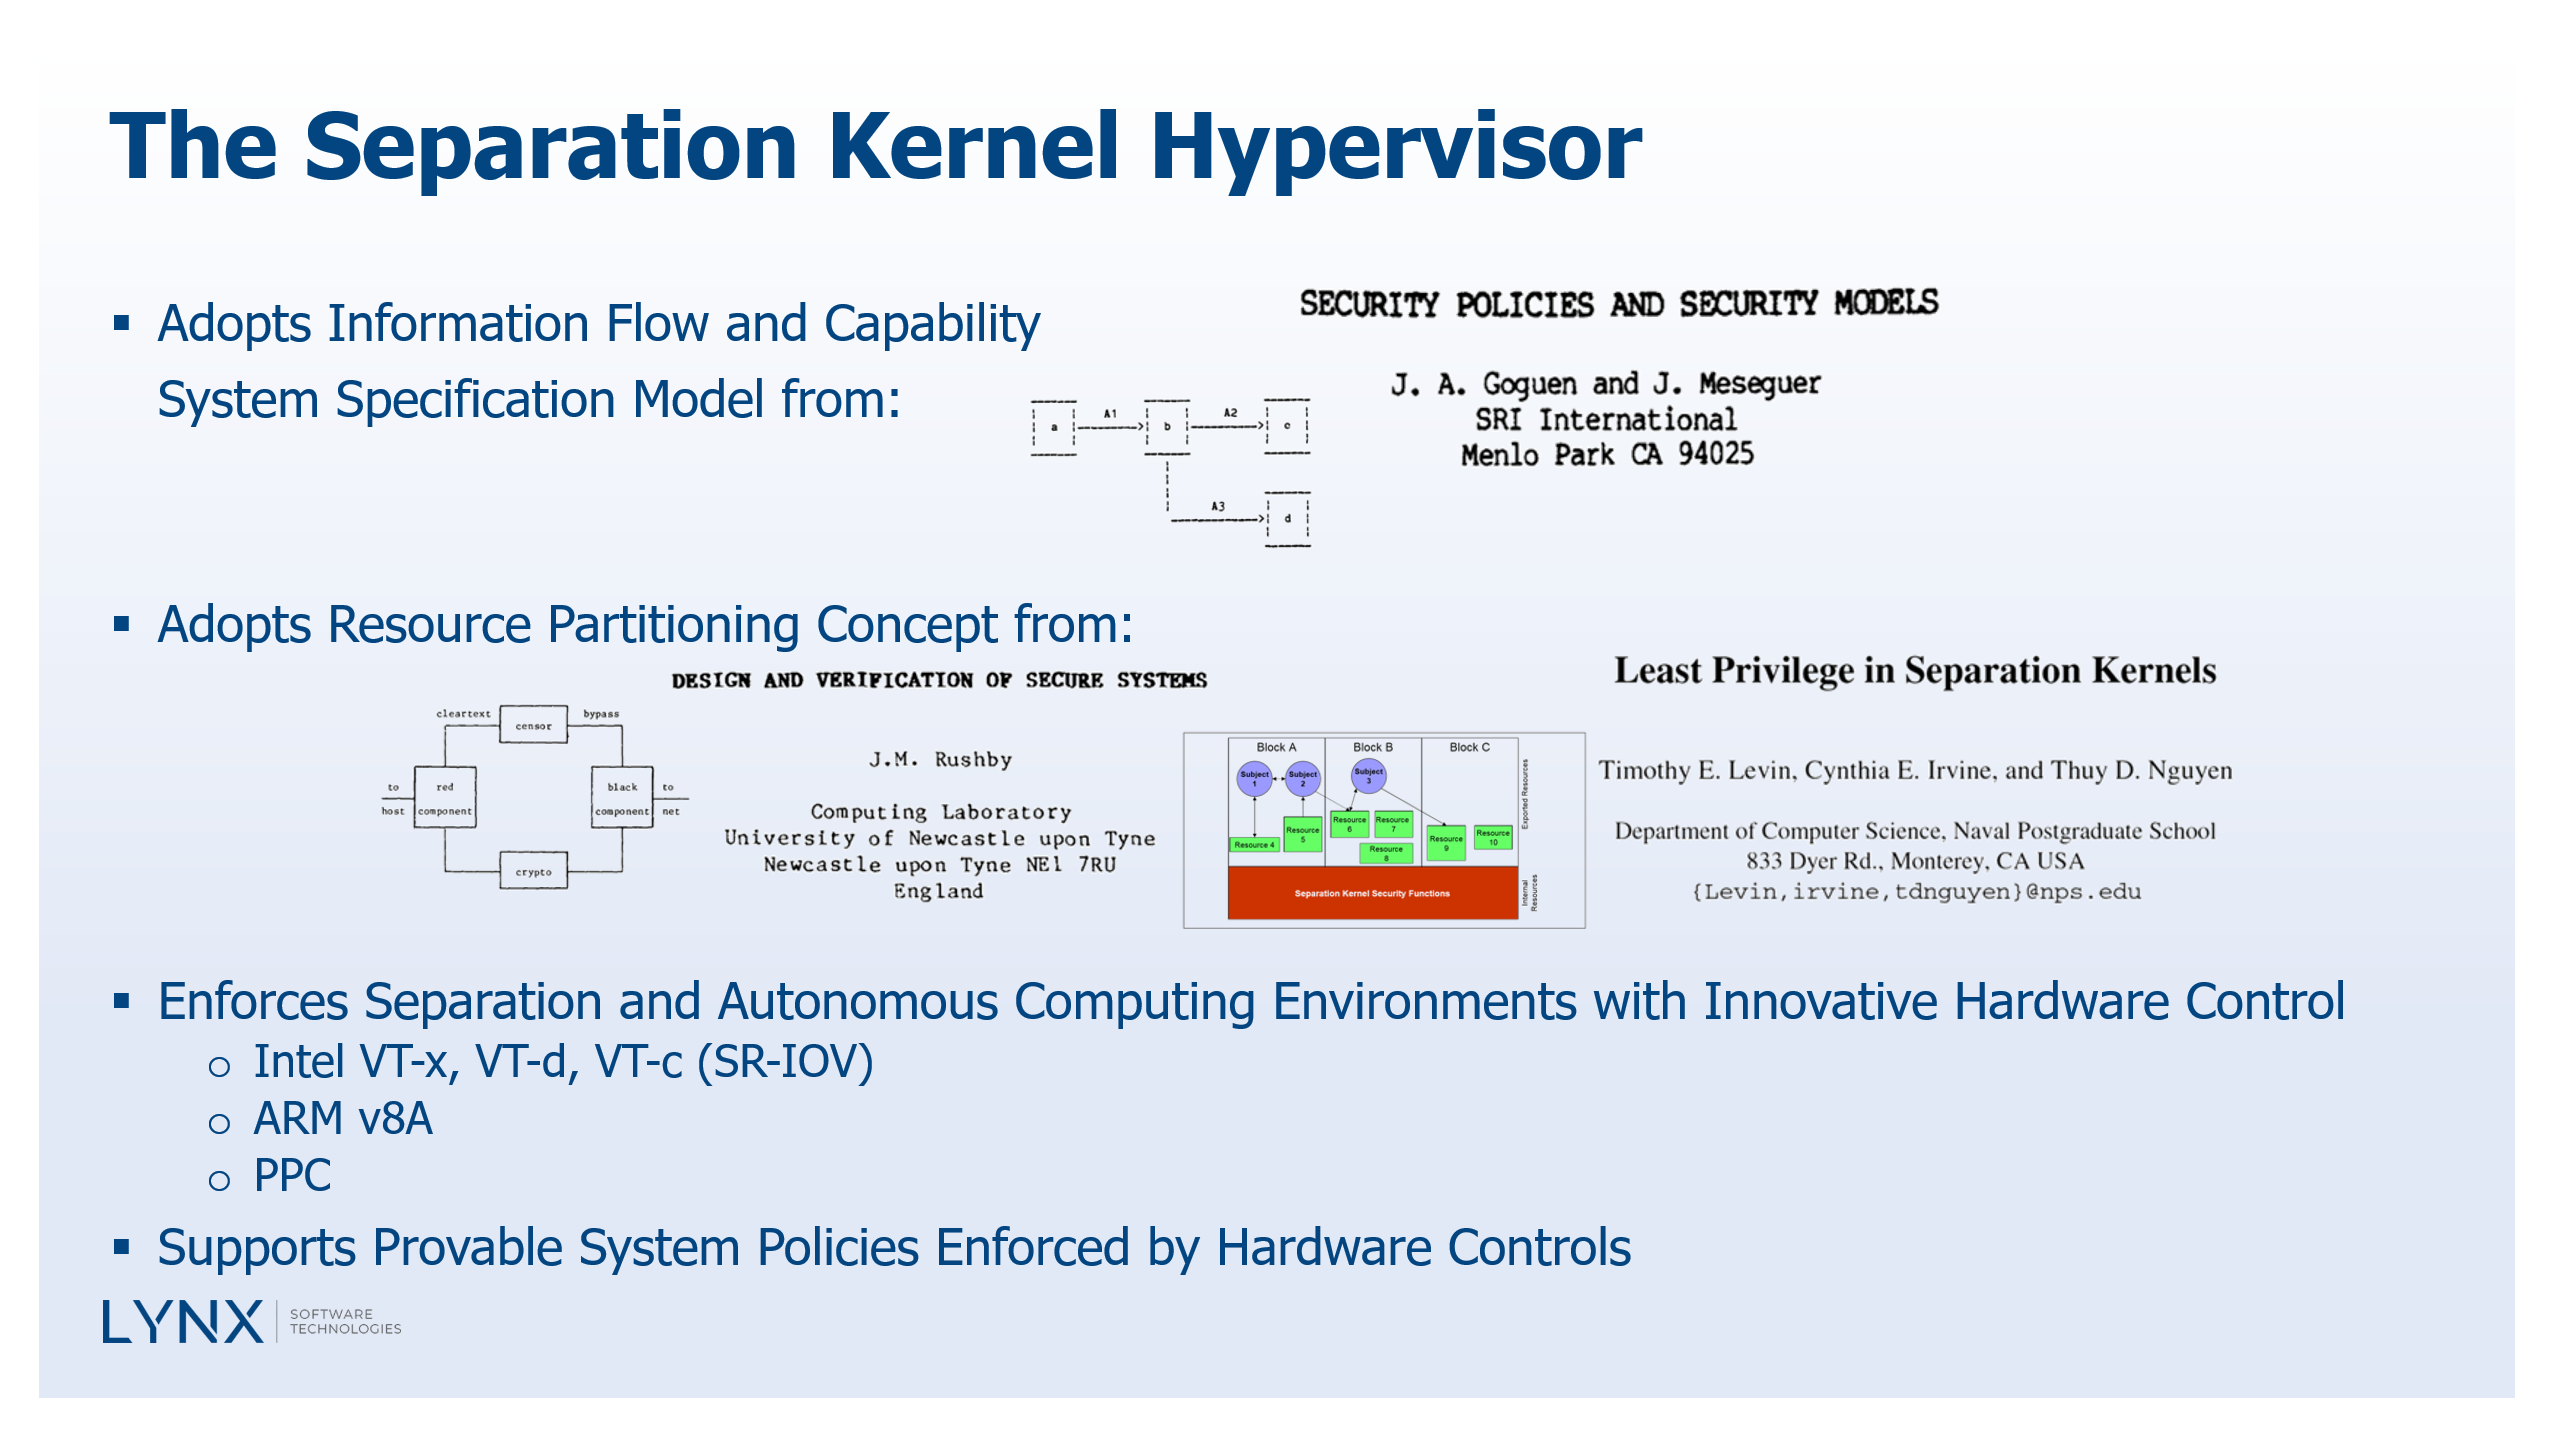 102 - The Separation Kernel Hypervisor